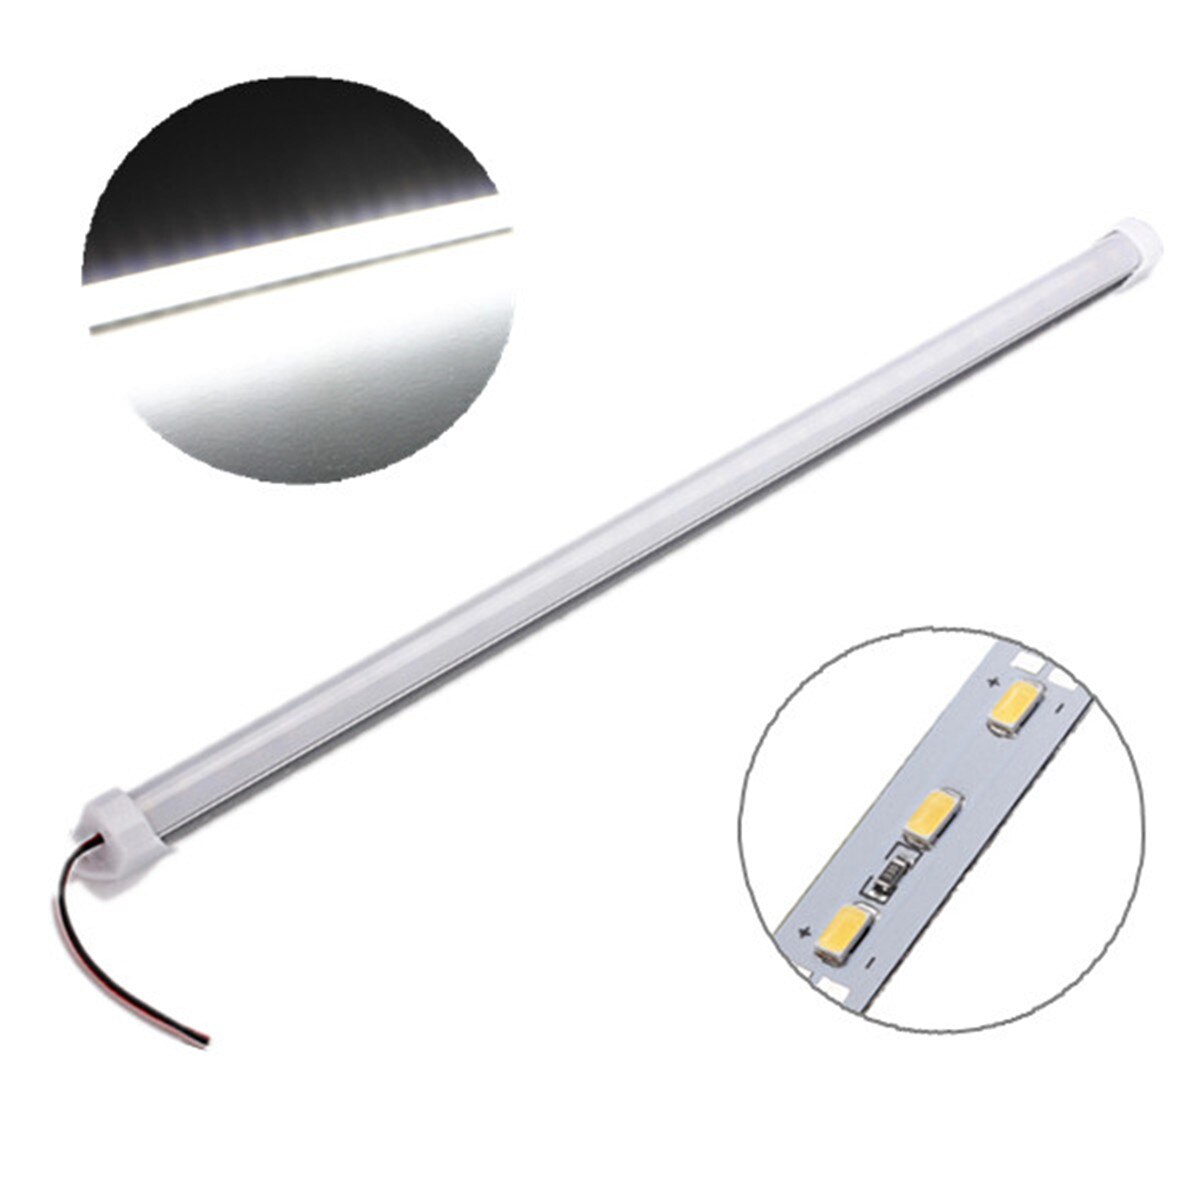 La barre de LED étanche allume le compteur de coffret économiseur d'énergie de bande rigide de l'intense luminosité LED de cc 12V 50cm 9W 5630 SMD 36: White